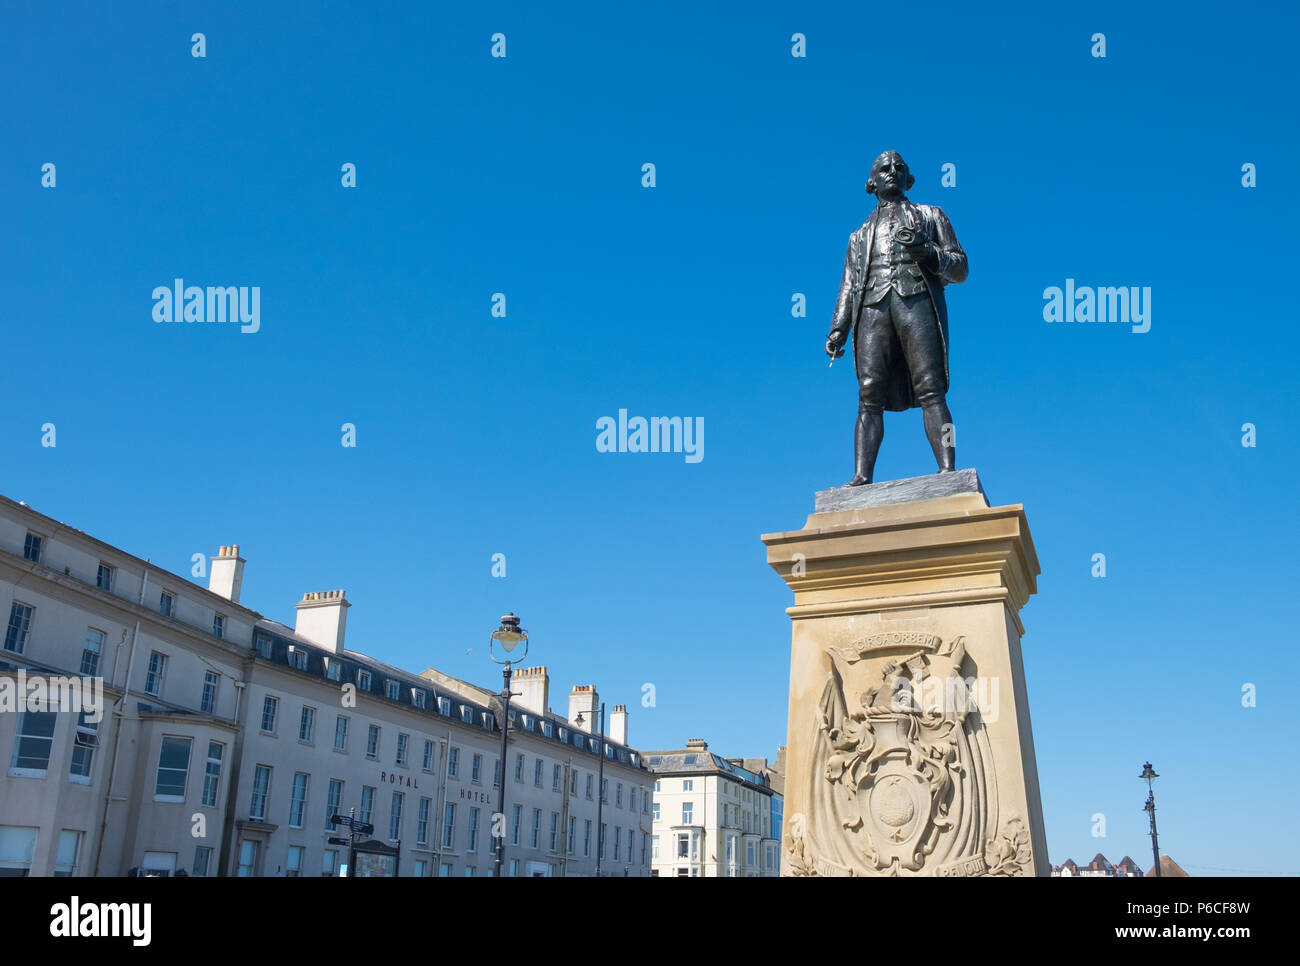 El Capitán James Cook estatua en Whitby, Yorkshire del Norte. Cook comenzó sus viajes de descubrimiento en Whitby Harbour cerca de su ciudad natal. Foto de stock